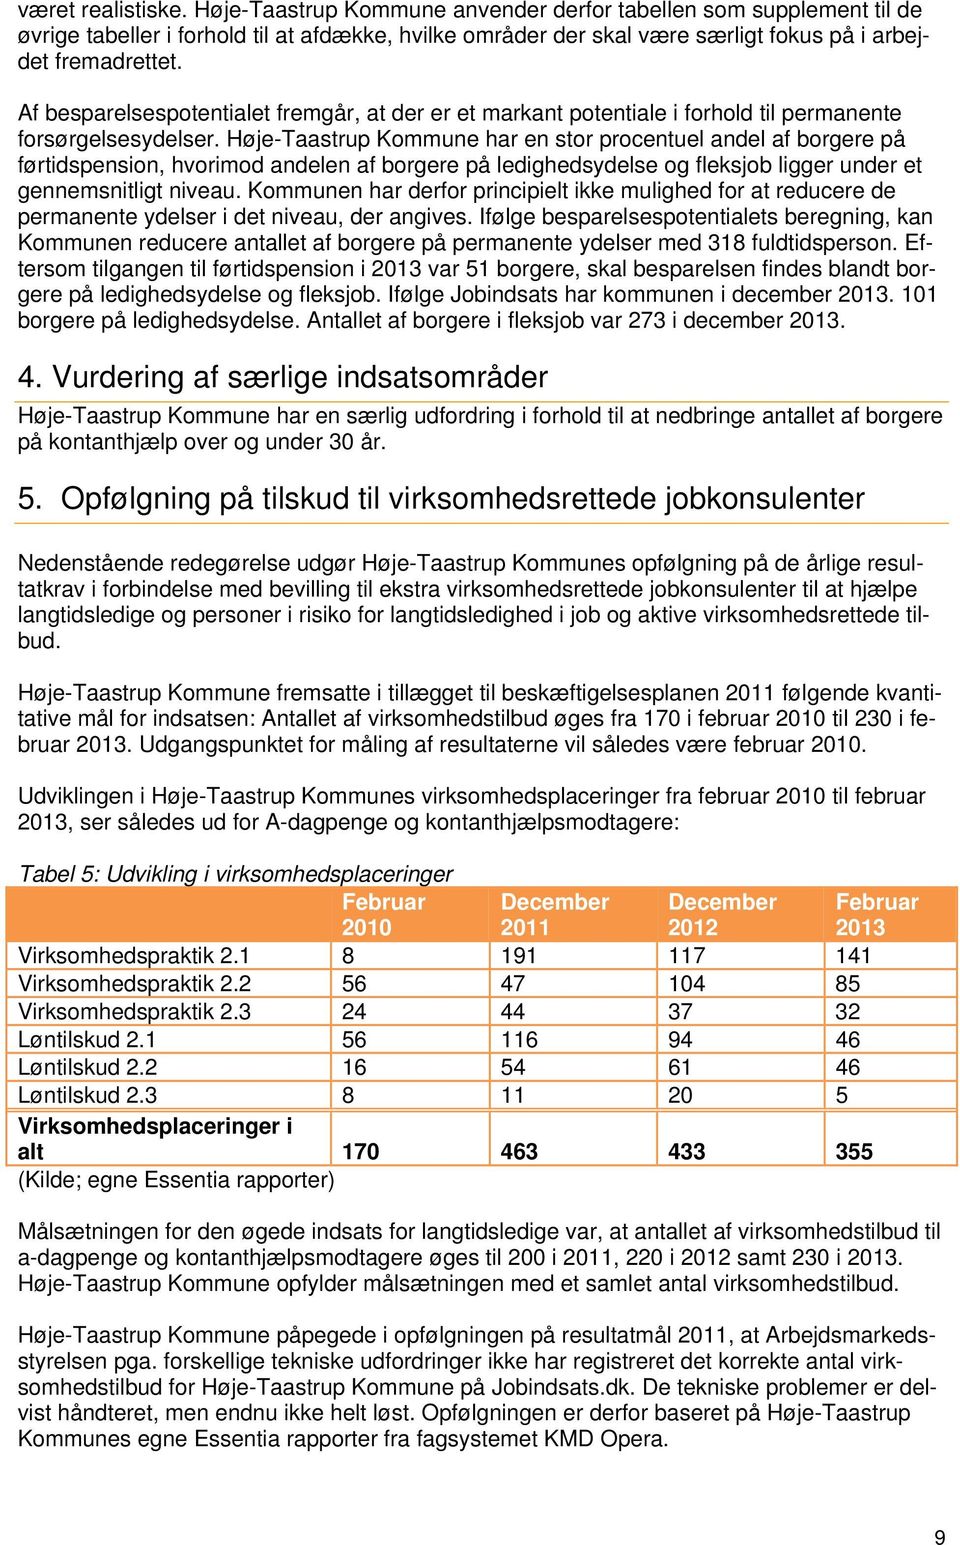 Høje-Taastrup Kommune har en stor procentuel andel af borgere på førtidspension, hvorimod andelen af borgere på ledighedsydelse og fleksjob ligger under et gennemsnitligt niveau.